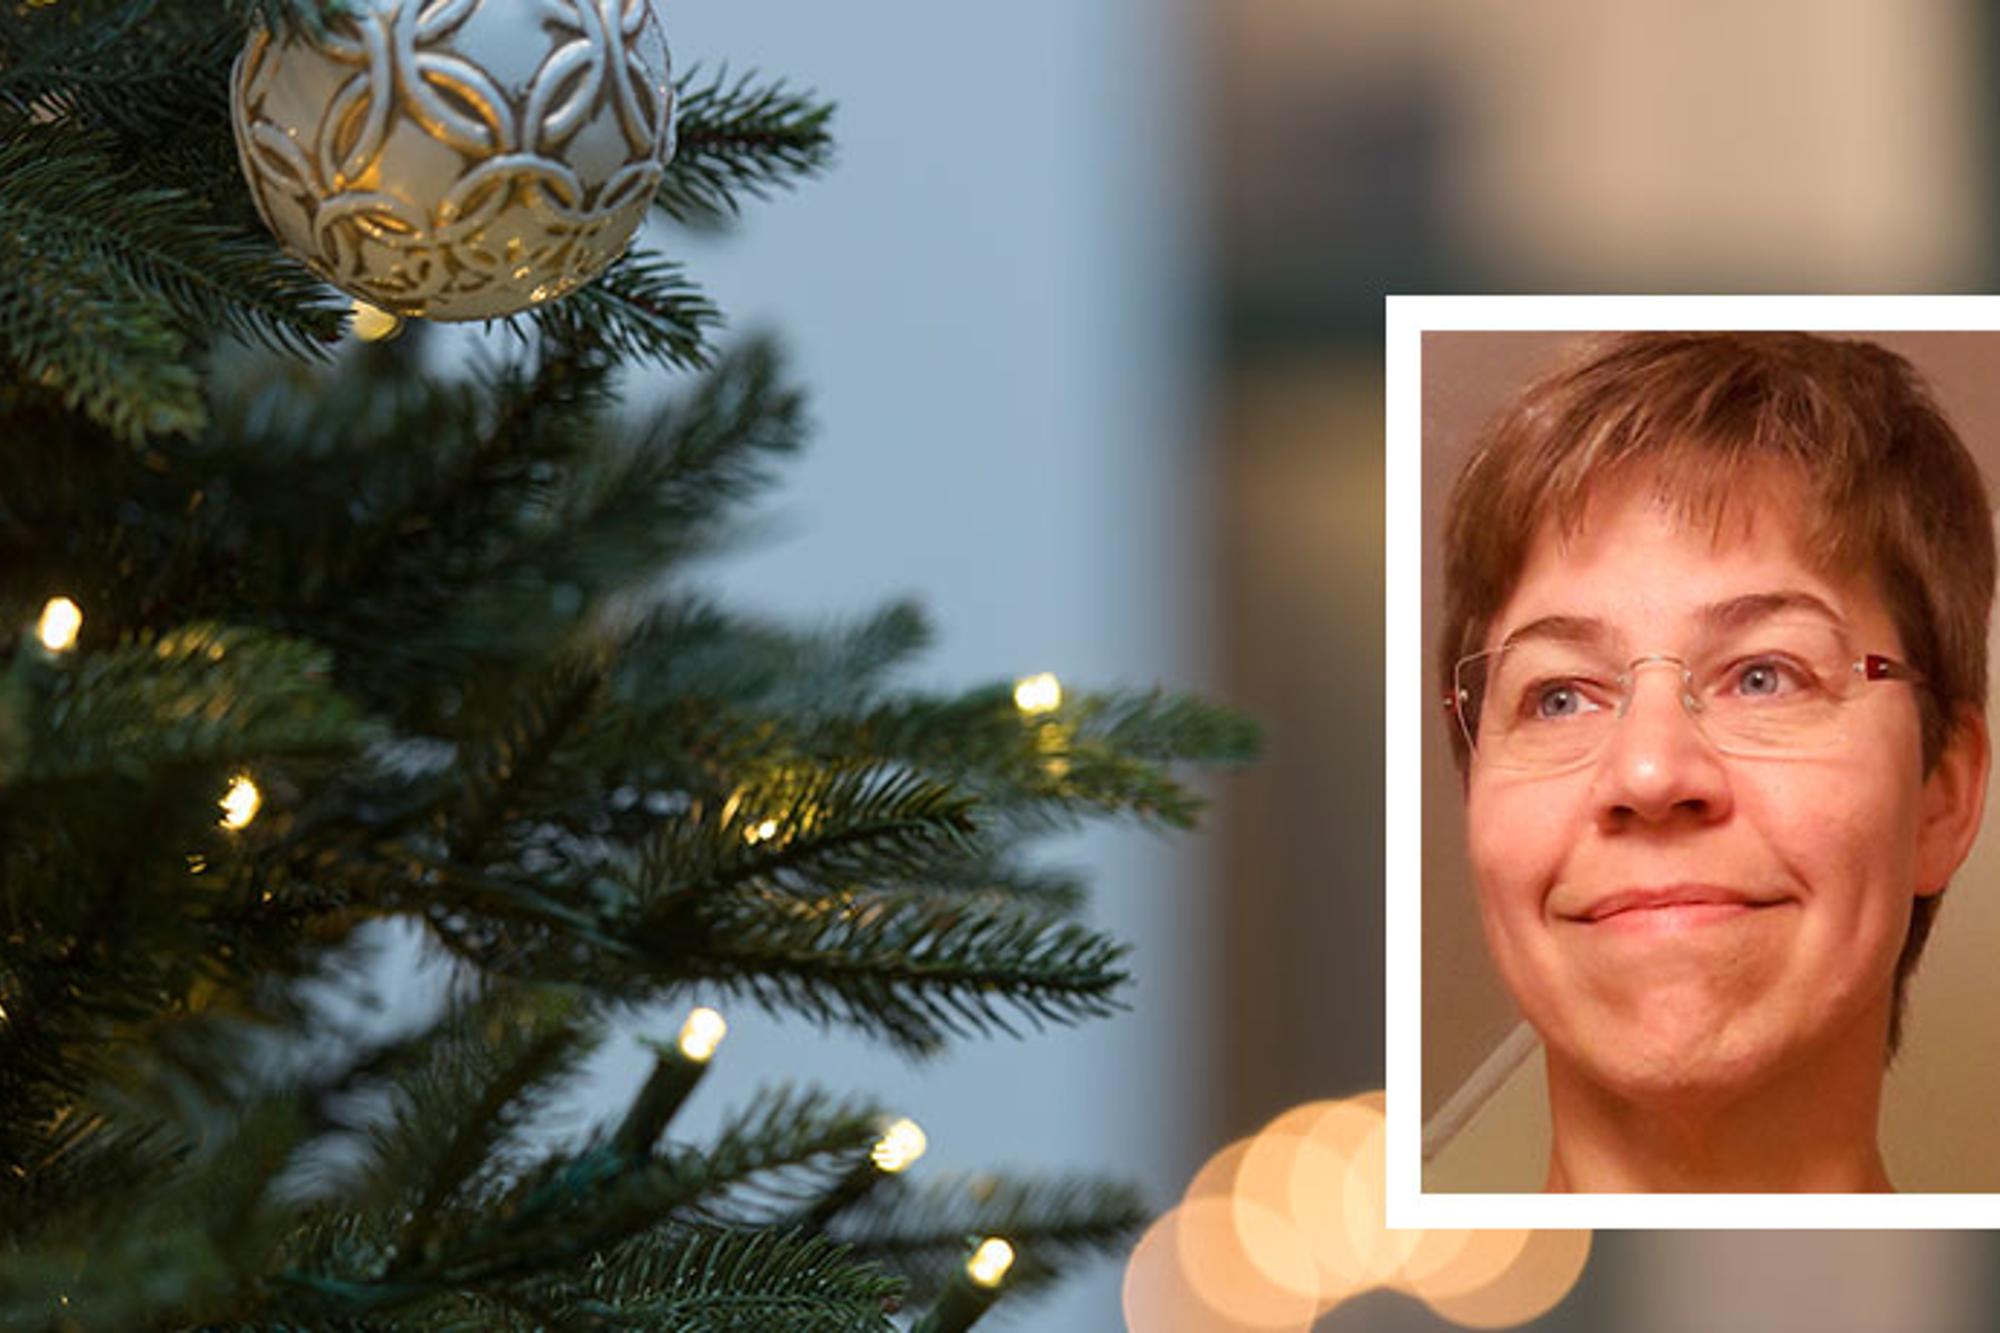 En mindre porträttbild av Ylva Pettersson som är kårledare för Frälsningsarmén i Sundsvall. Bakgrunden består av fokus på en julgranskula i en julgran.